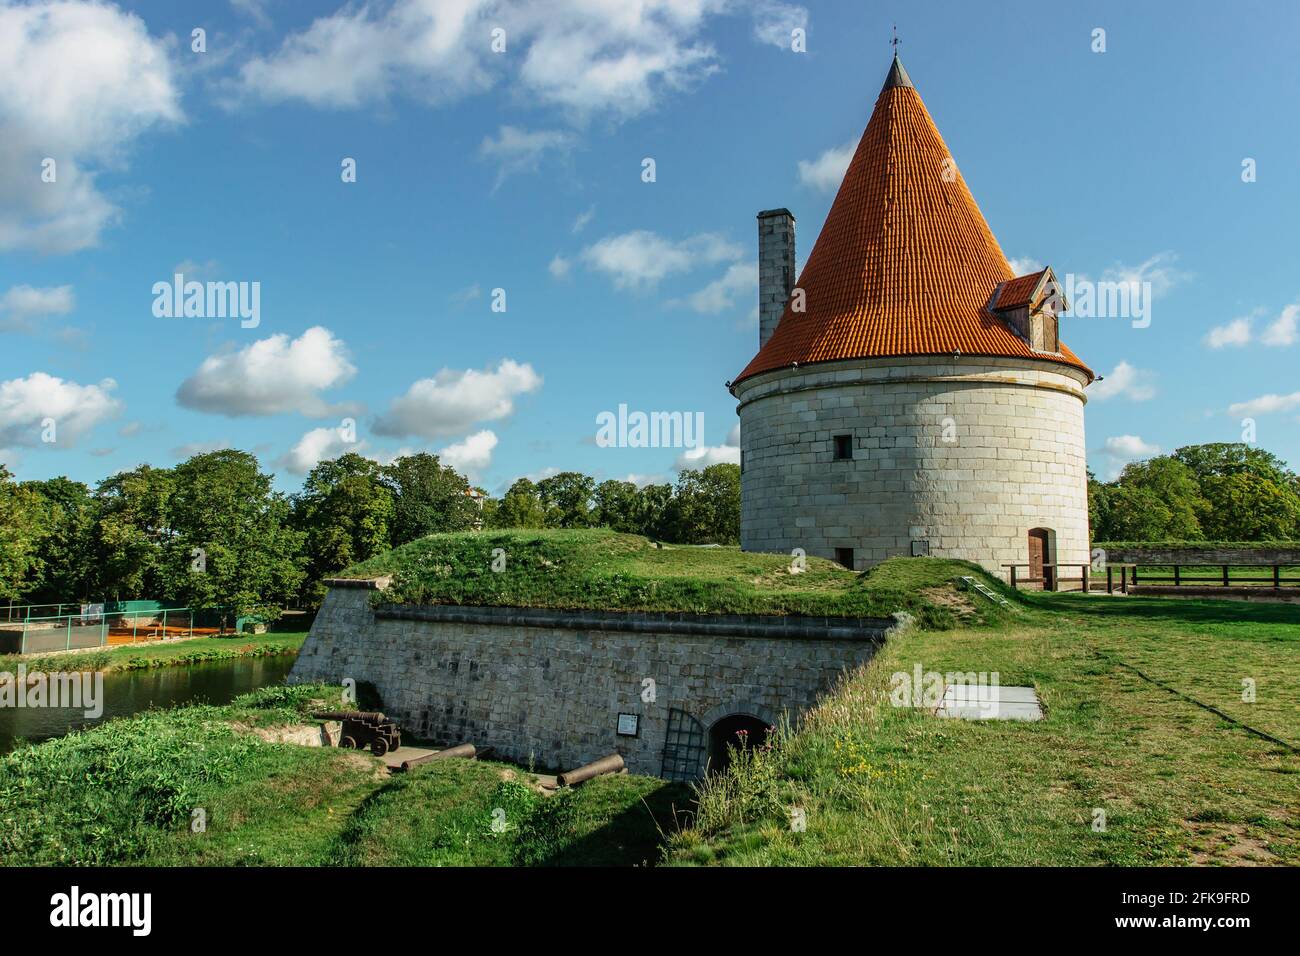 Castello episcopale di Koressaare sull'isola di Saaremaa, Estonia.fortificazione medievale in stile tardo gotico con Bastion.Sightseeing nei Baltici. Foto Stock